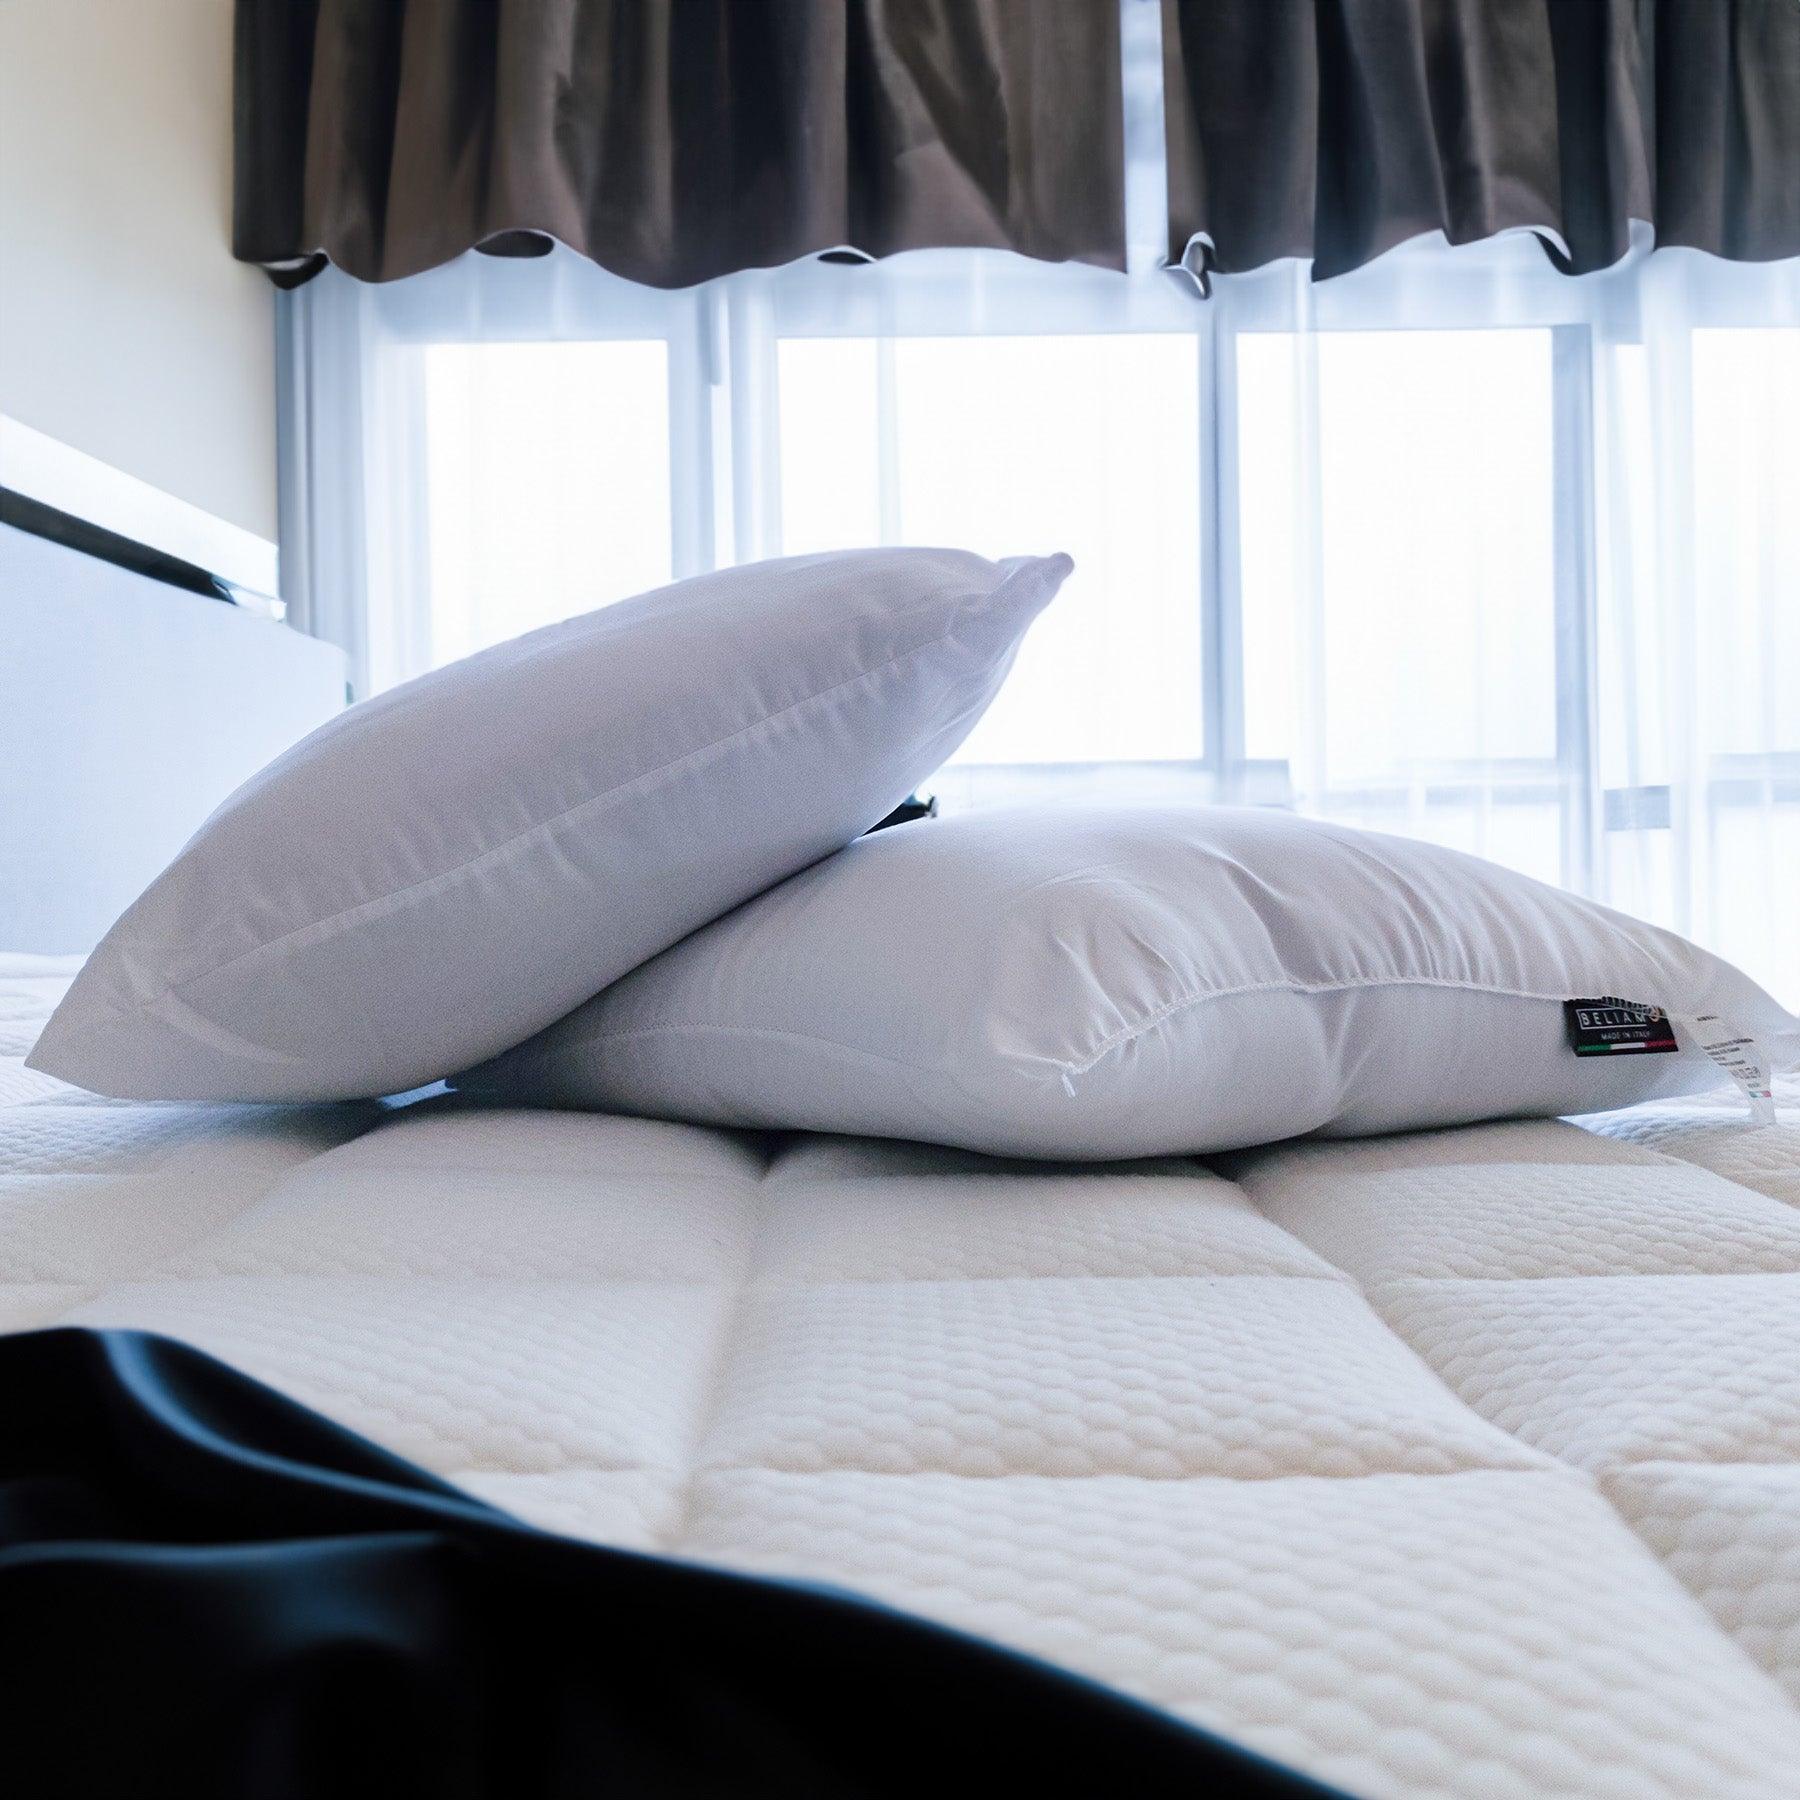 Set di 2 cuscini decorativi CARAVAGGIO in microfibra - Stile e comfort per il tuo arredamento su Beliamo.com